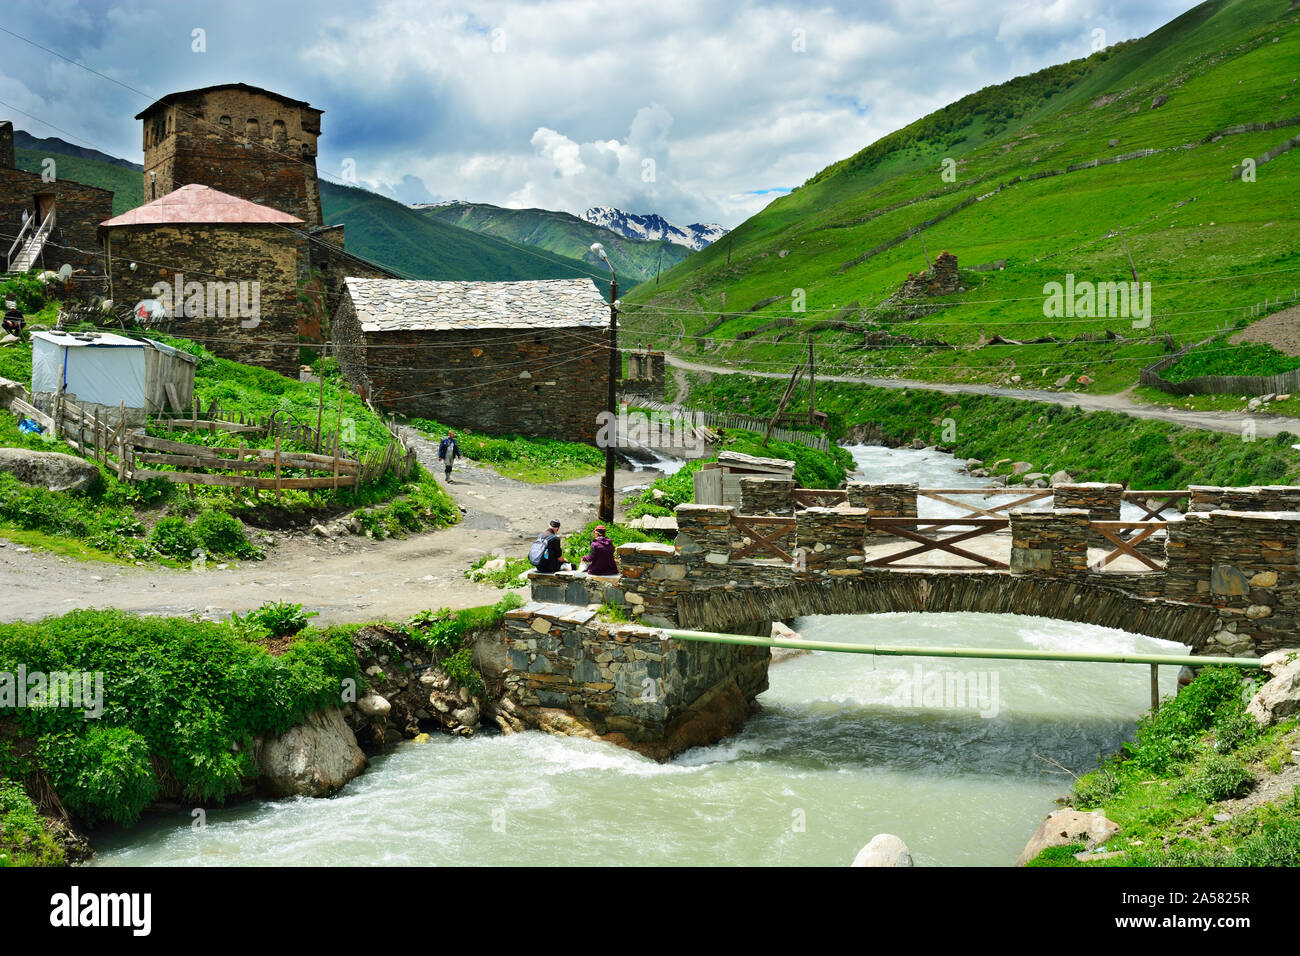 Le village de montagne d'Ushguli et la rivière Enguri. Site du patrimoine mondial de l'UNESCO. La Svanétie, Géorgie. Caucase Banque D'Images